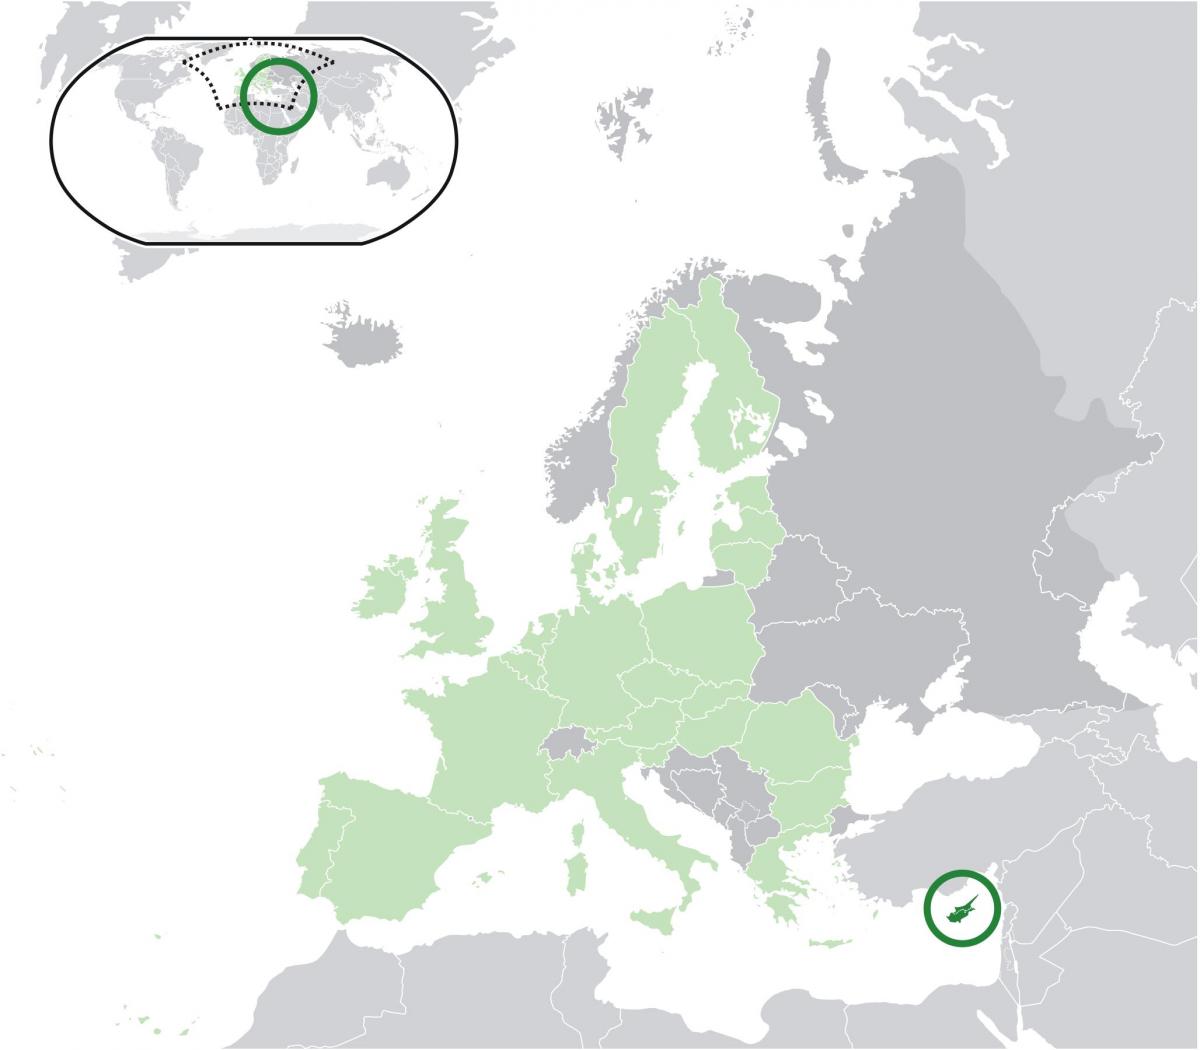 na mapie Europy na Cyprze